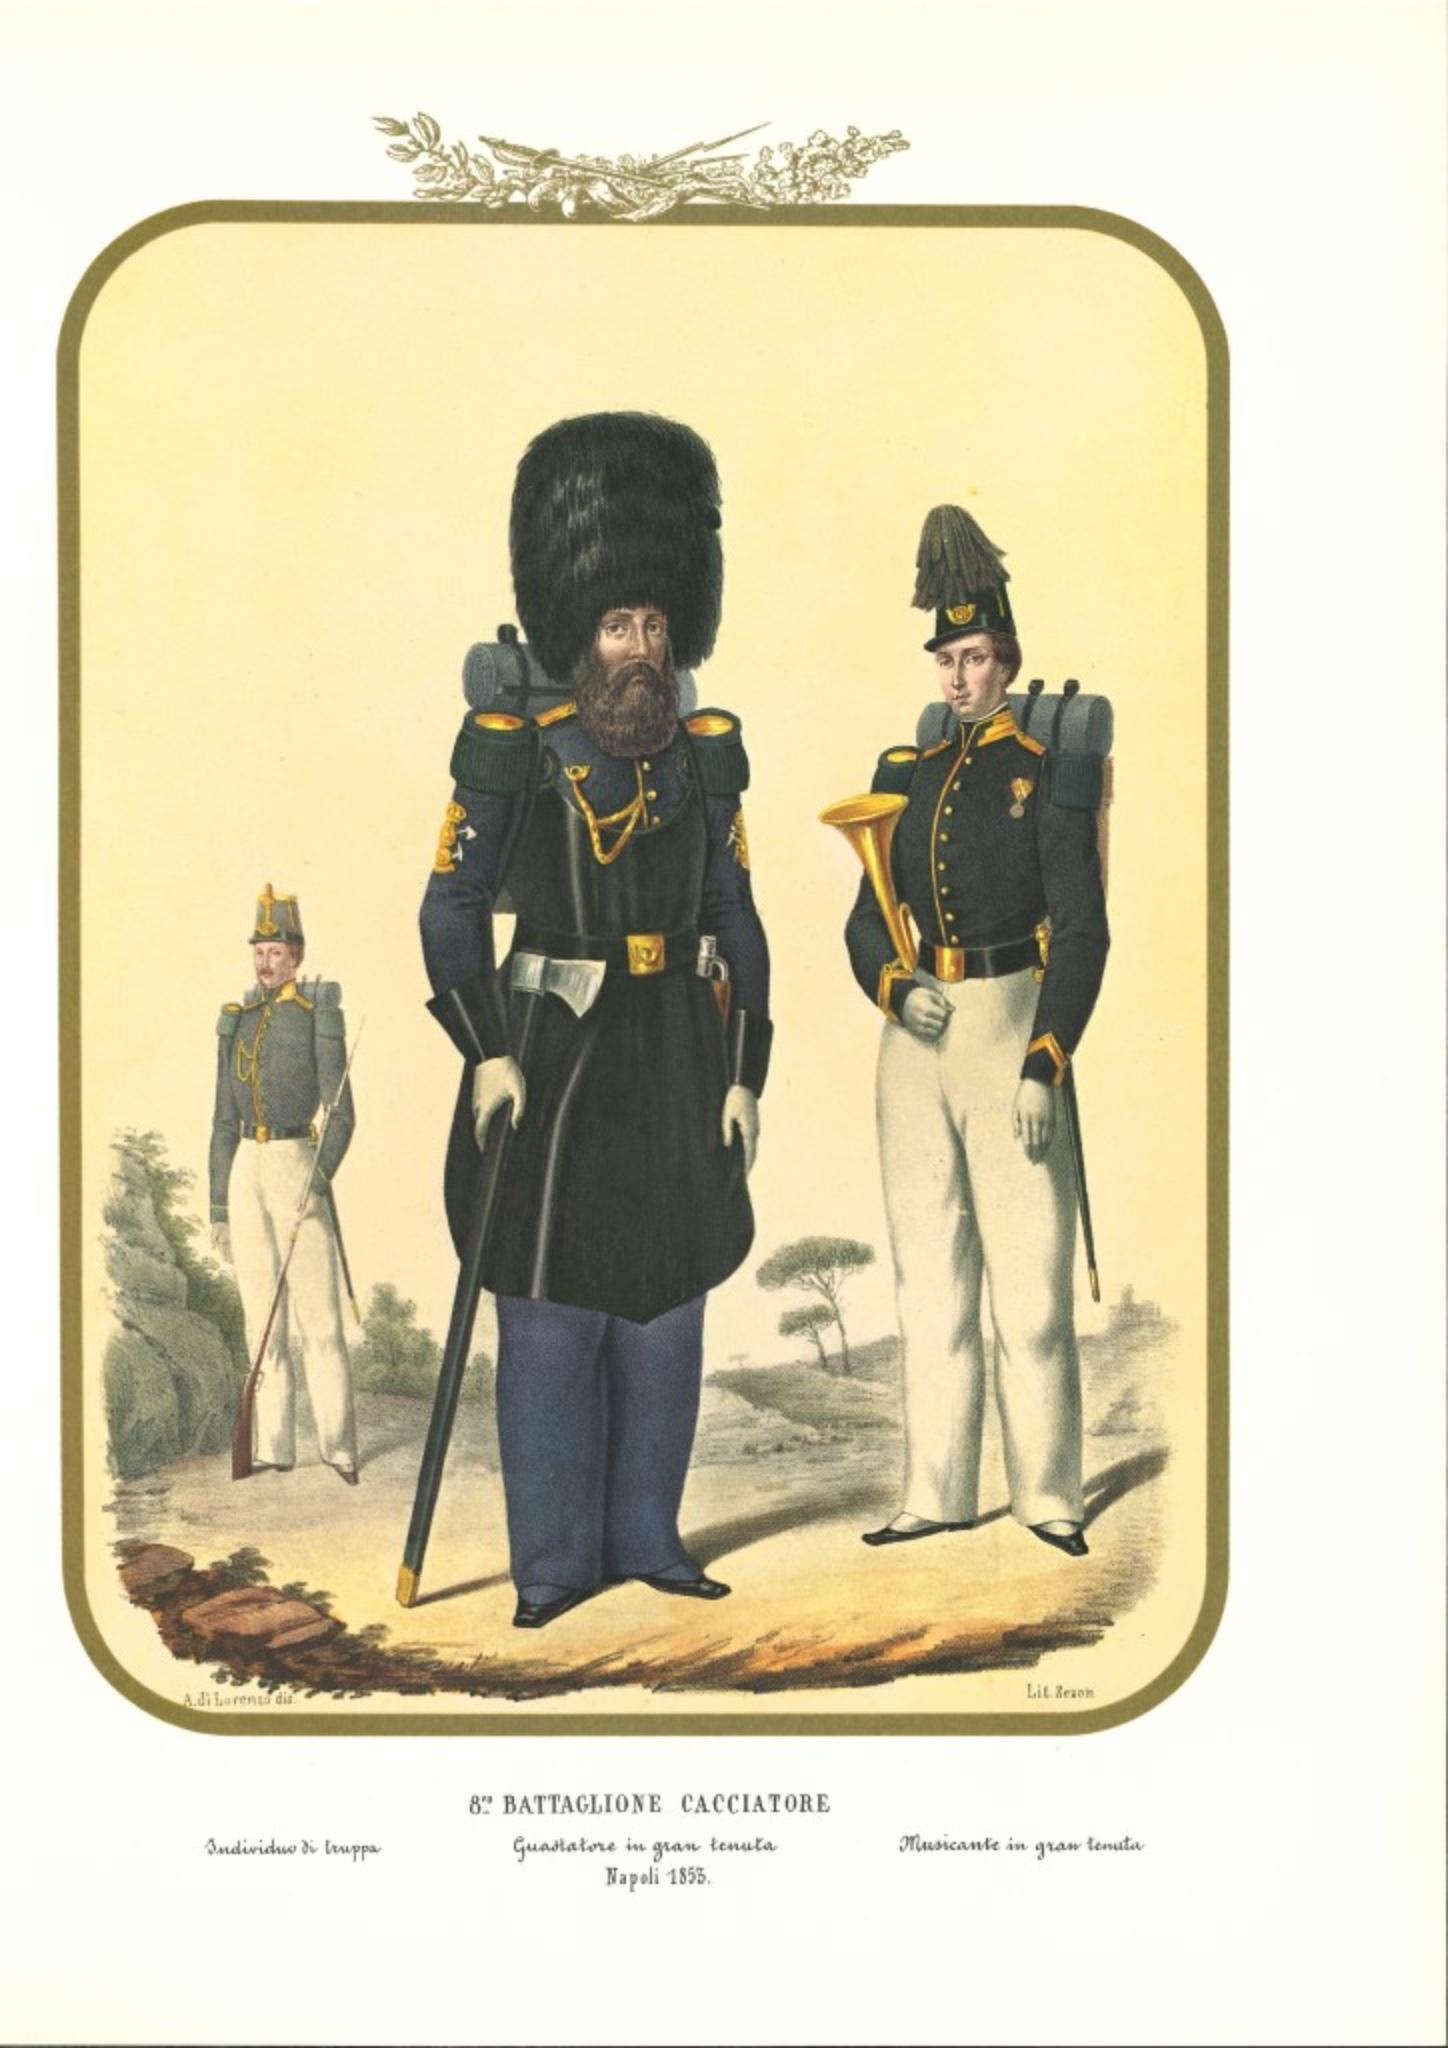 VIII Hunter Battalion est une lithographie originale d'Antonio Zezon. Naples 1853.

Intéressante lithographie en couleur qui décrit certains membres du bataillon des chasseurs : Un Spoiler en grande condition - Individus en grande condition

En